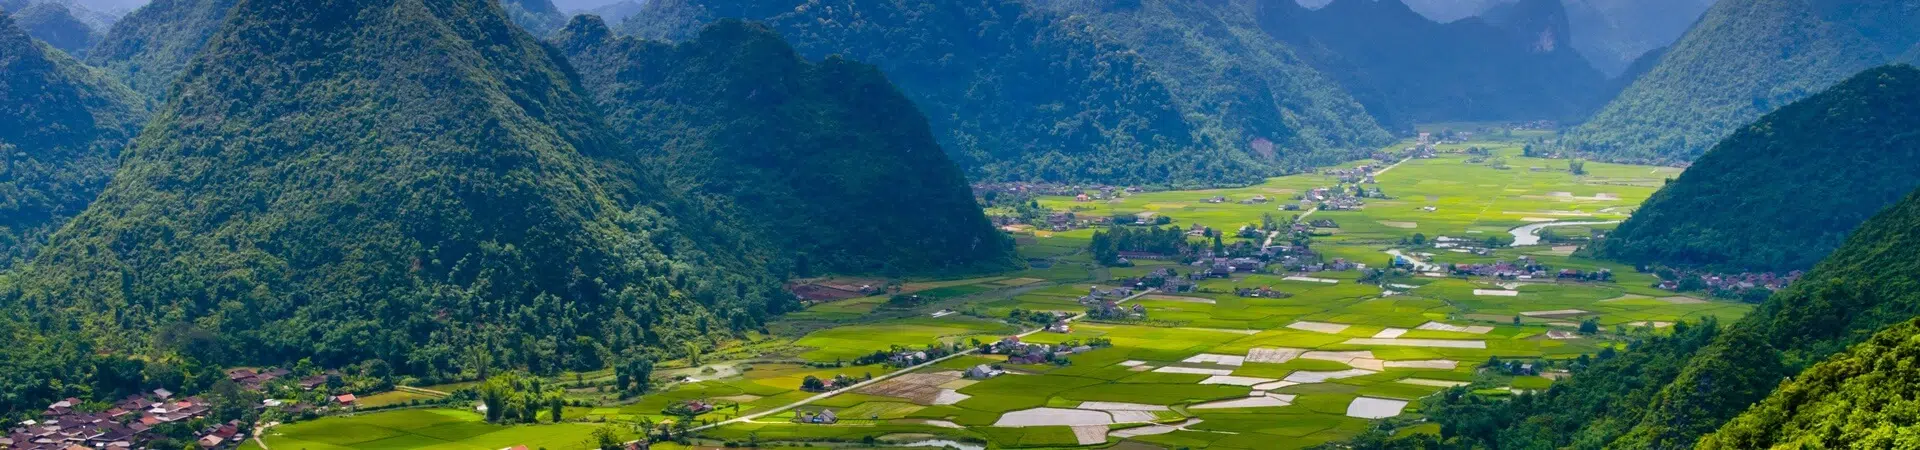 Príroda a vidiek Ninh Binh